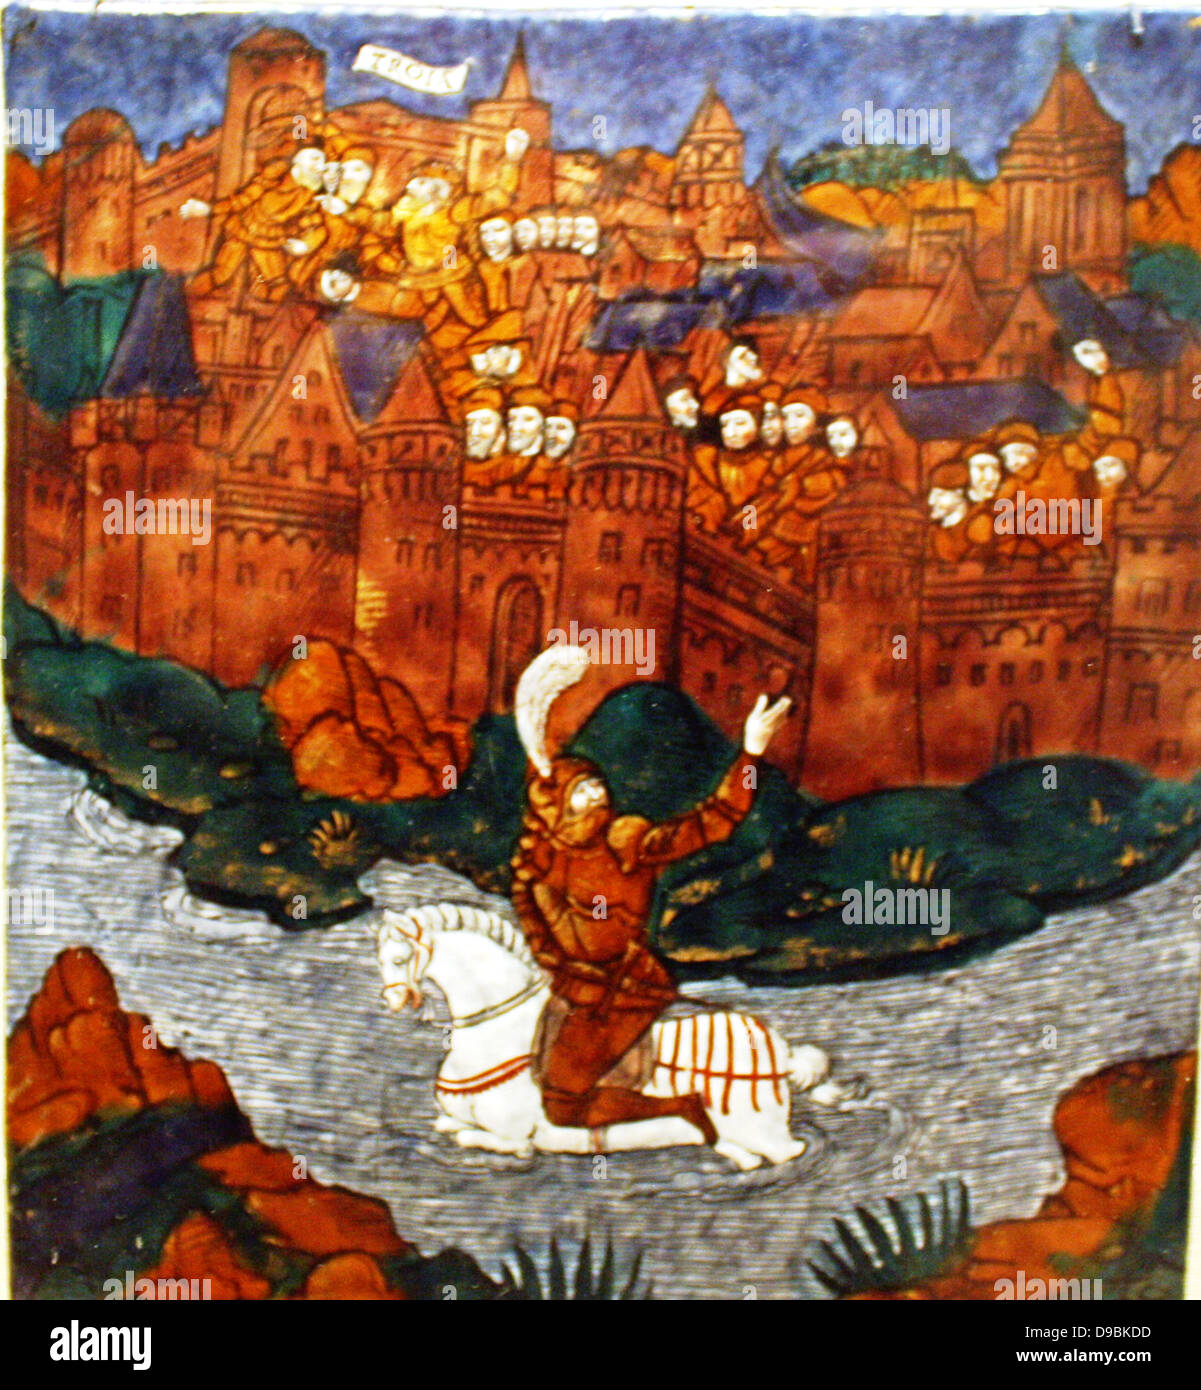 La placca : Turnus travolti dalla Trojan, attraversa il fiume per tornare ai suoi compagni. Eneide, Libro IX, Limoges, circa 1533-35. Foto Stock